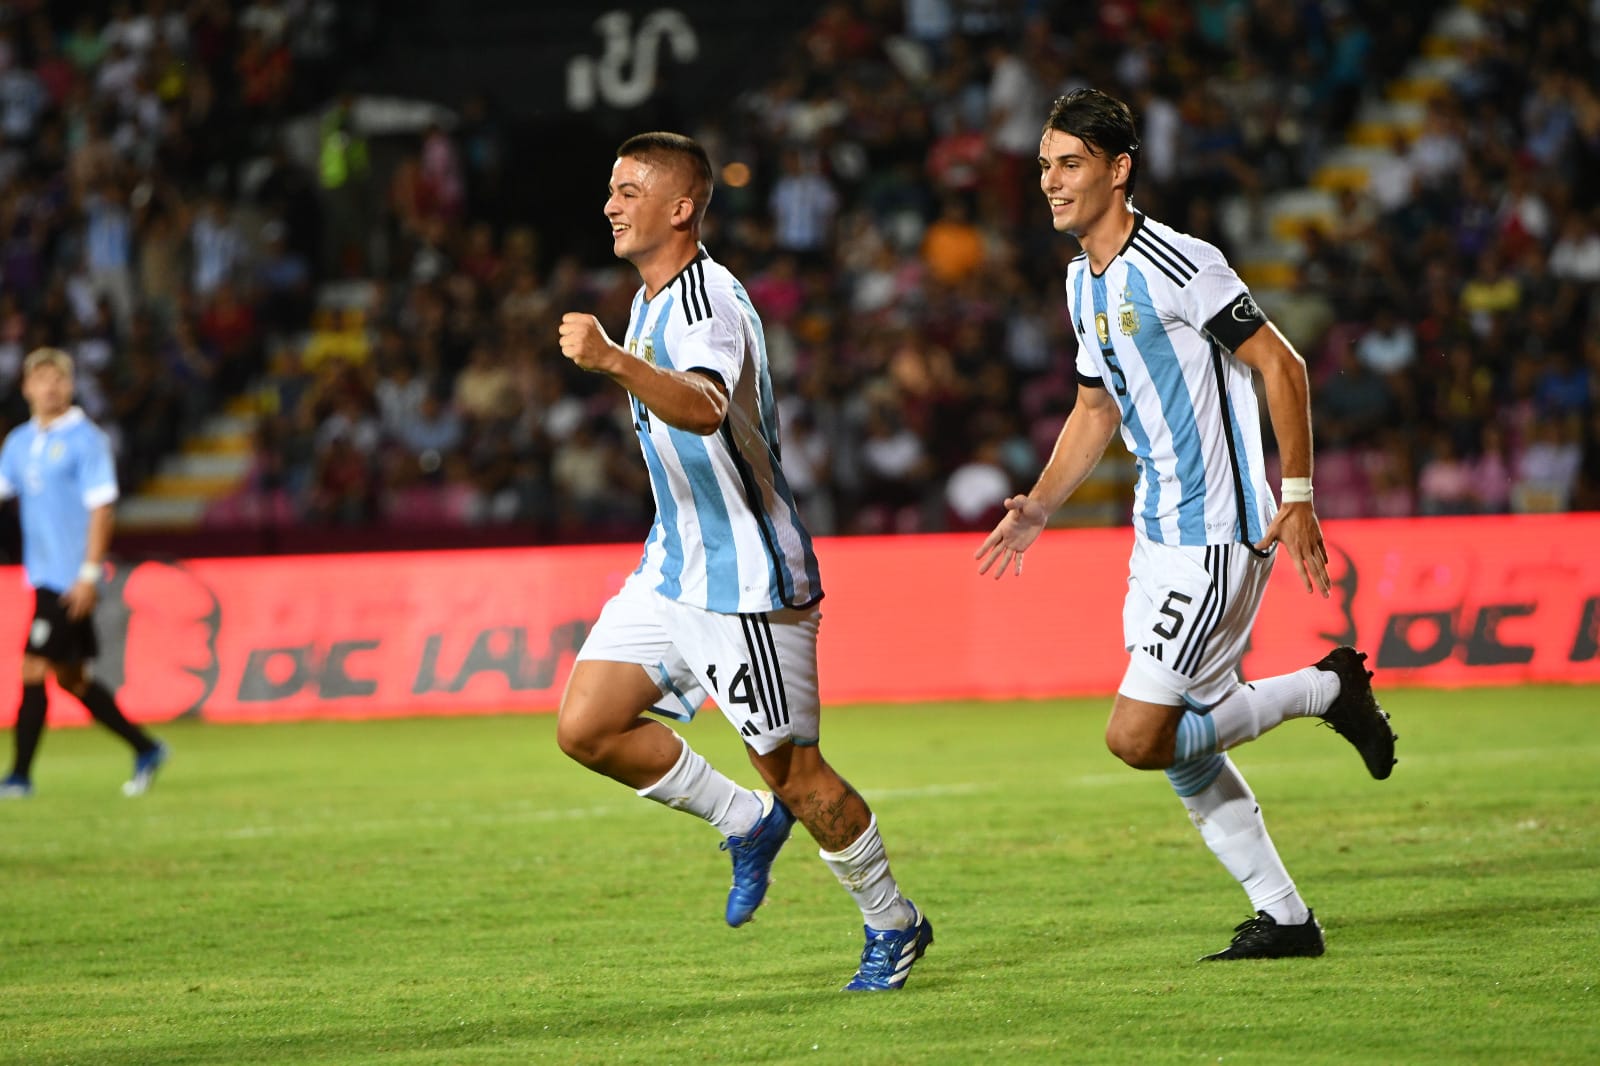 La Selección Argentina Sub 23 se mide ante Venezuela en el cuadrangular del Preolímpico | Canal Showsport